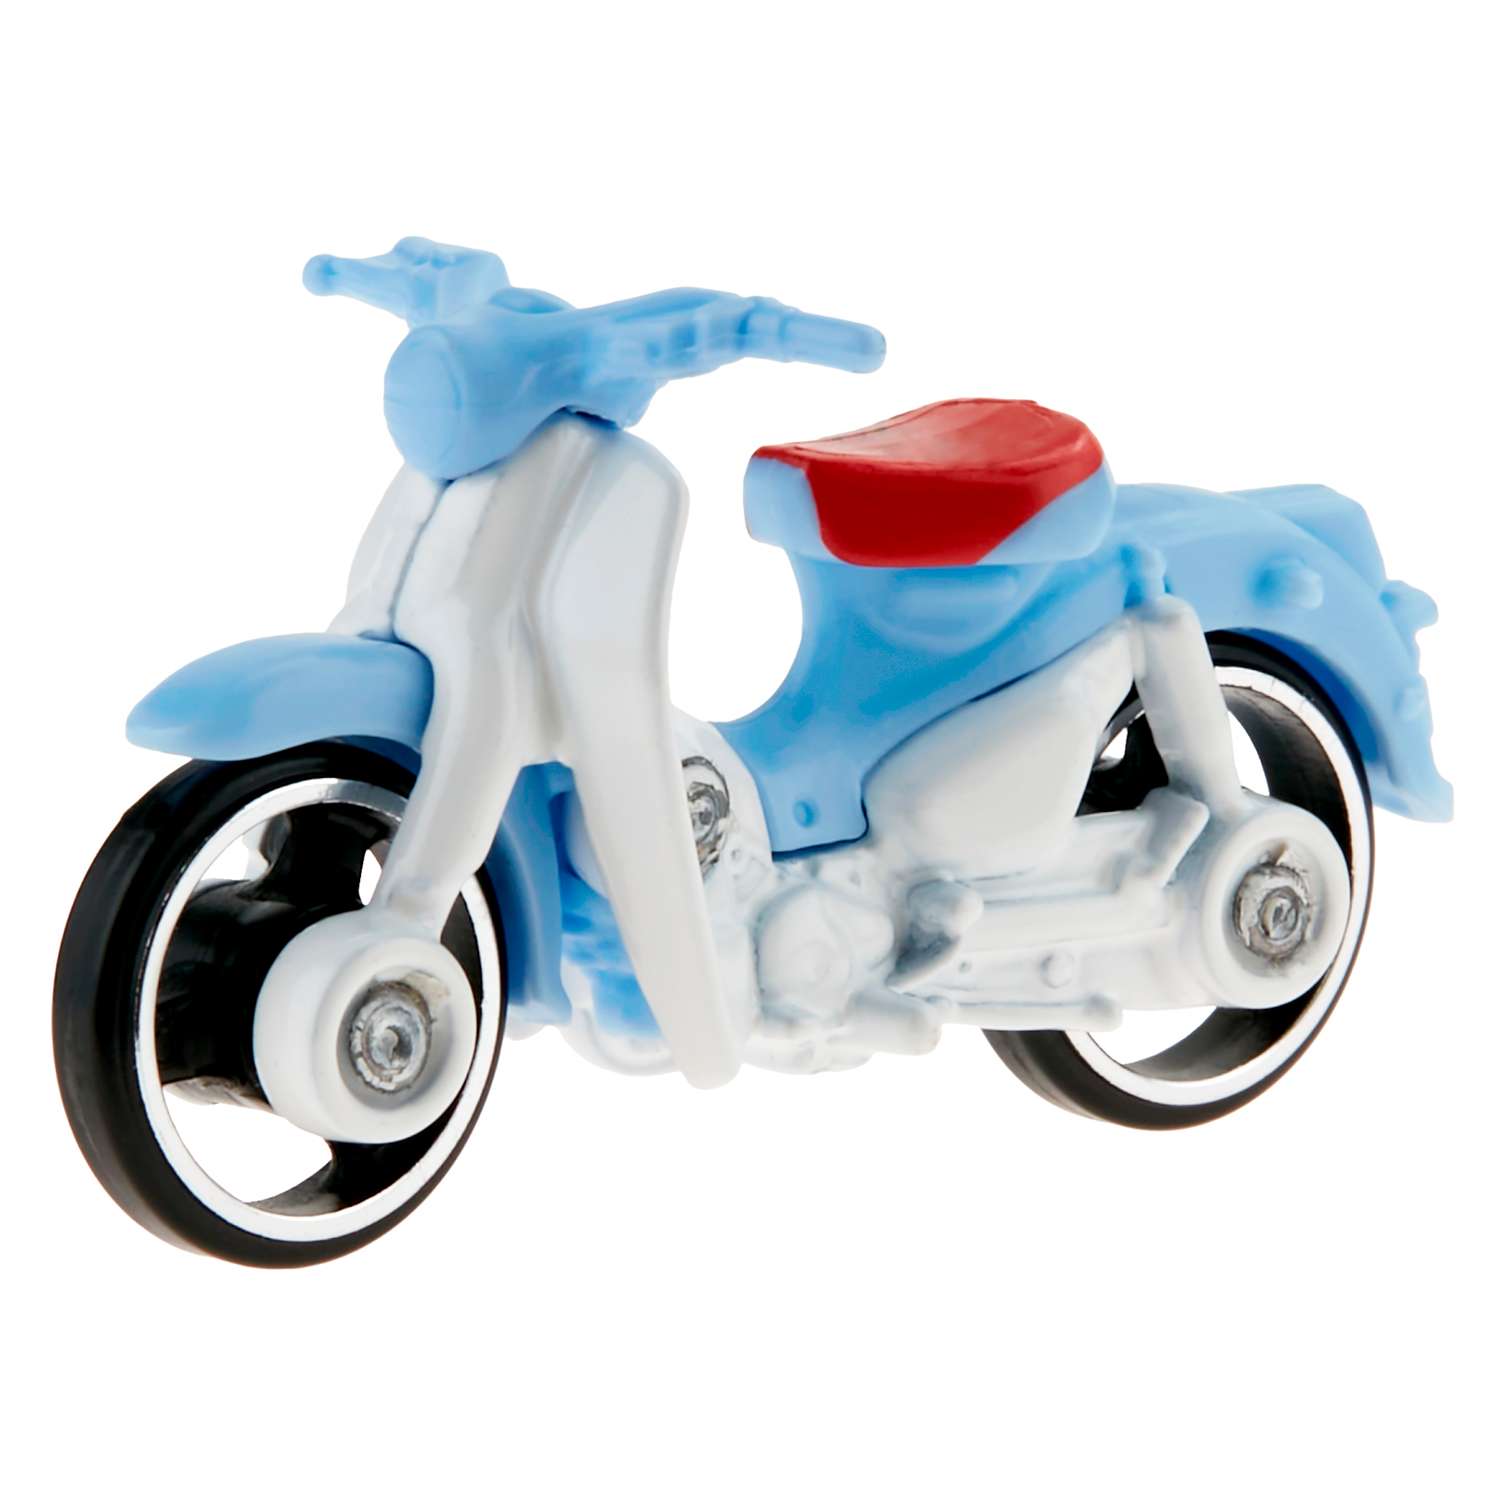 Мотоцикл Hot Wheels Honda Super Cub 62326 - фото 2